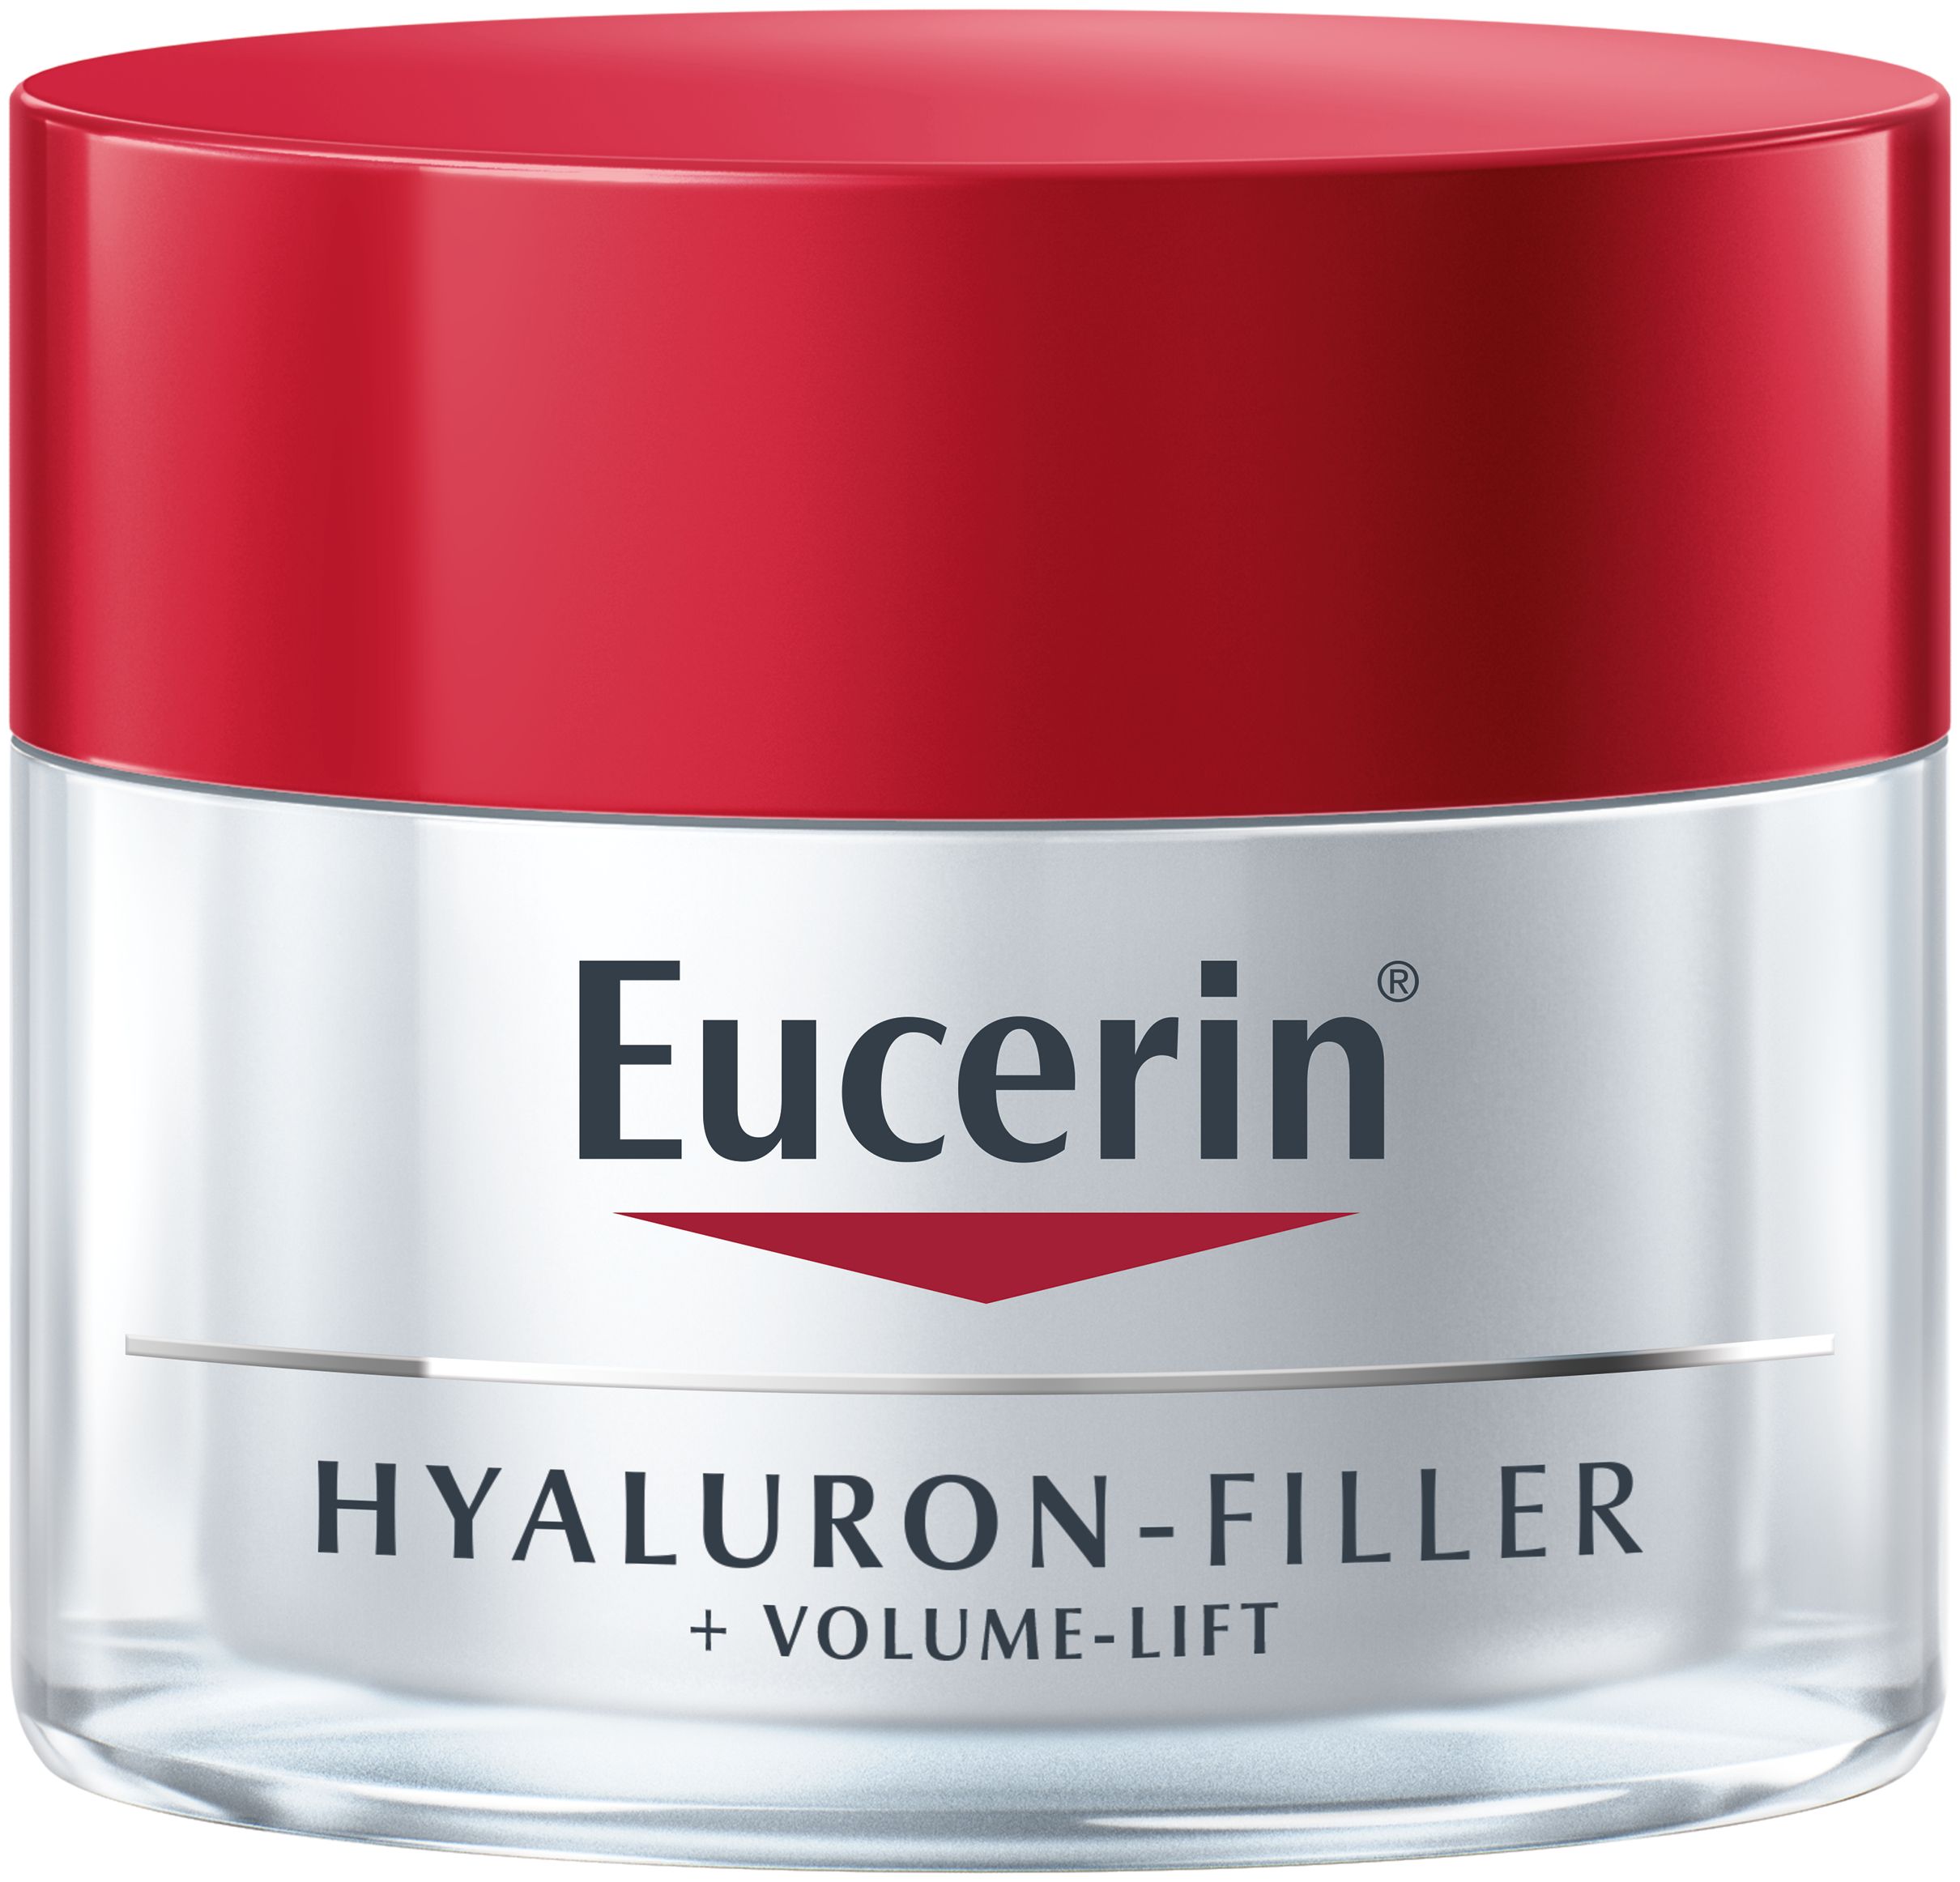 EUCERIN Hyaluron-Filler + Volume-Lift bőrfeszesítő nappali arckrém száraz bőrre 50 ml